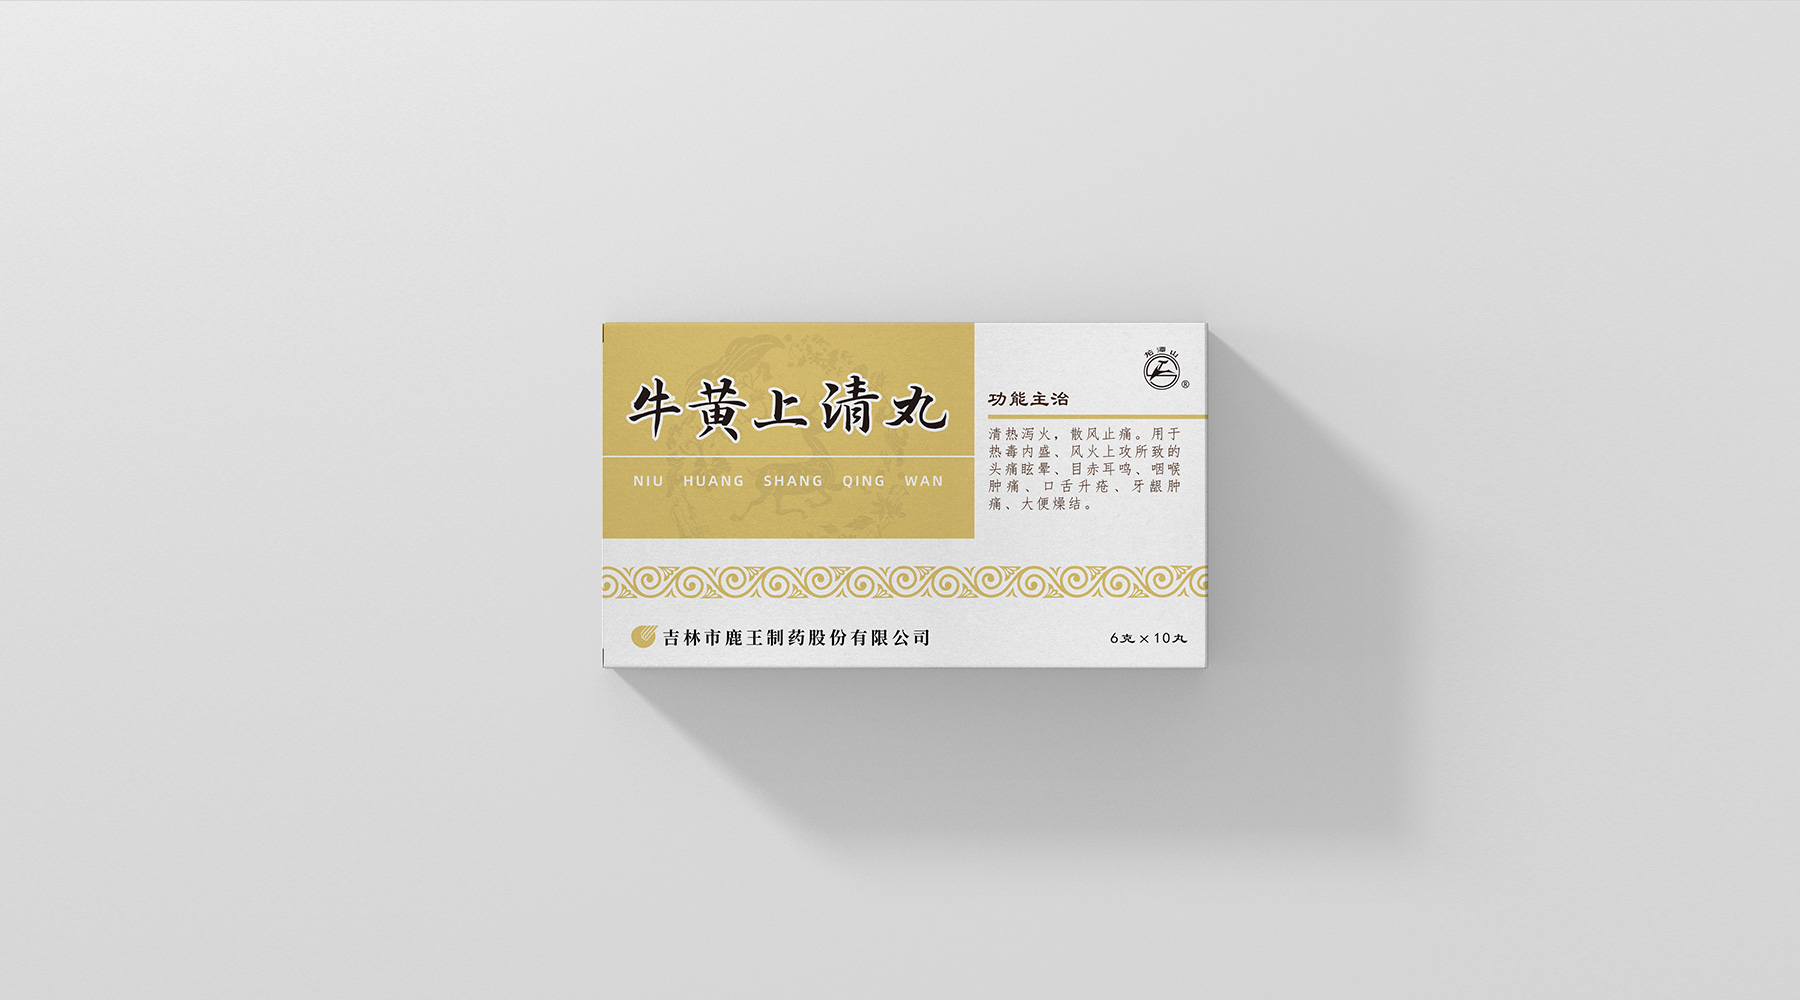 鹿王-中国色药盒系列_03.jpg